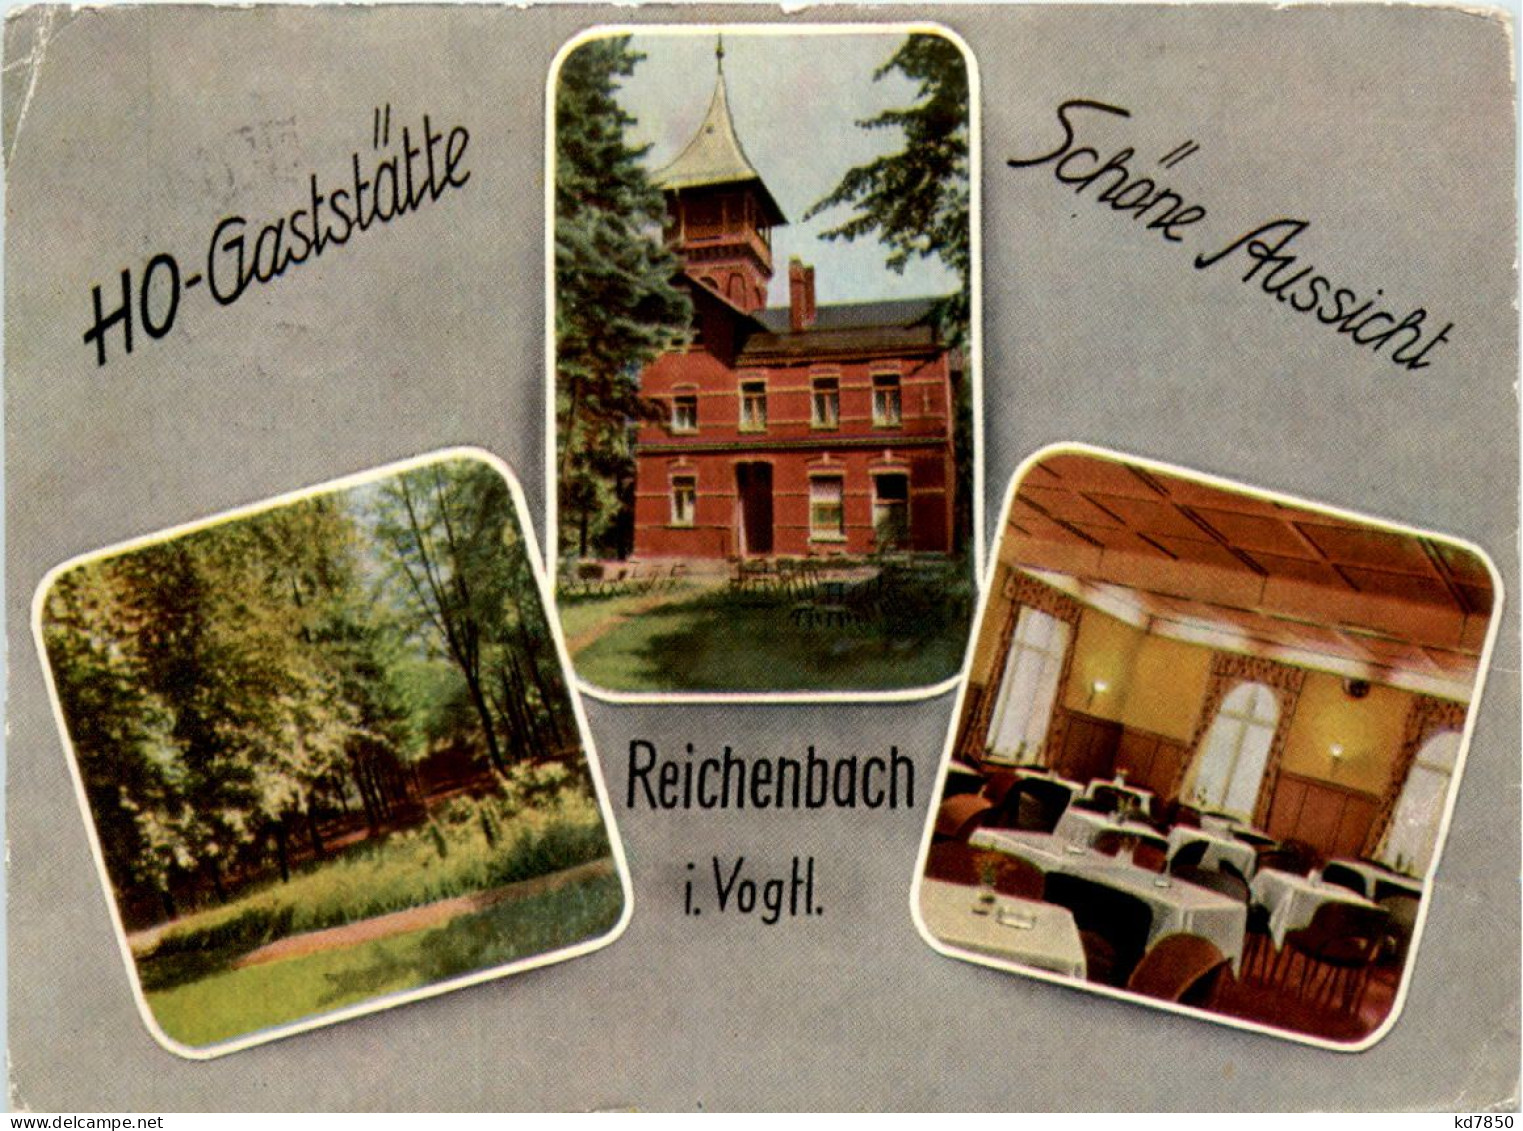 Reichenbach Im Vgtl., Div. Bilder - Reichenbach I. Vogtl.